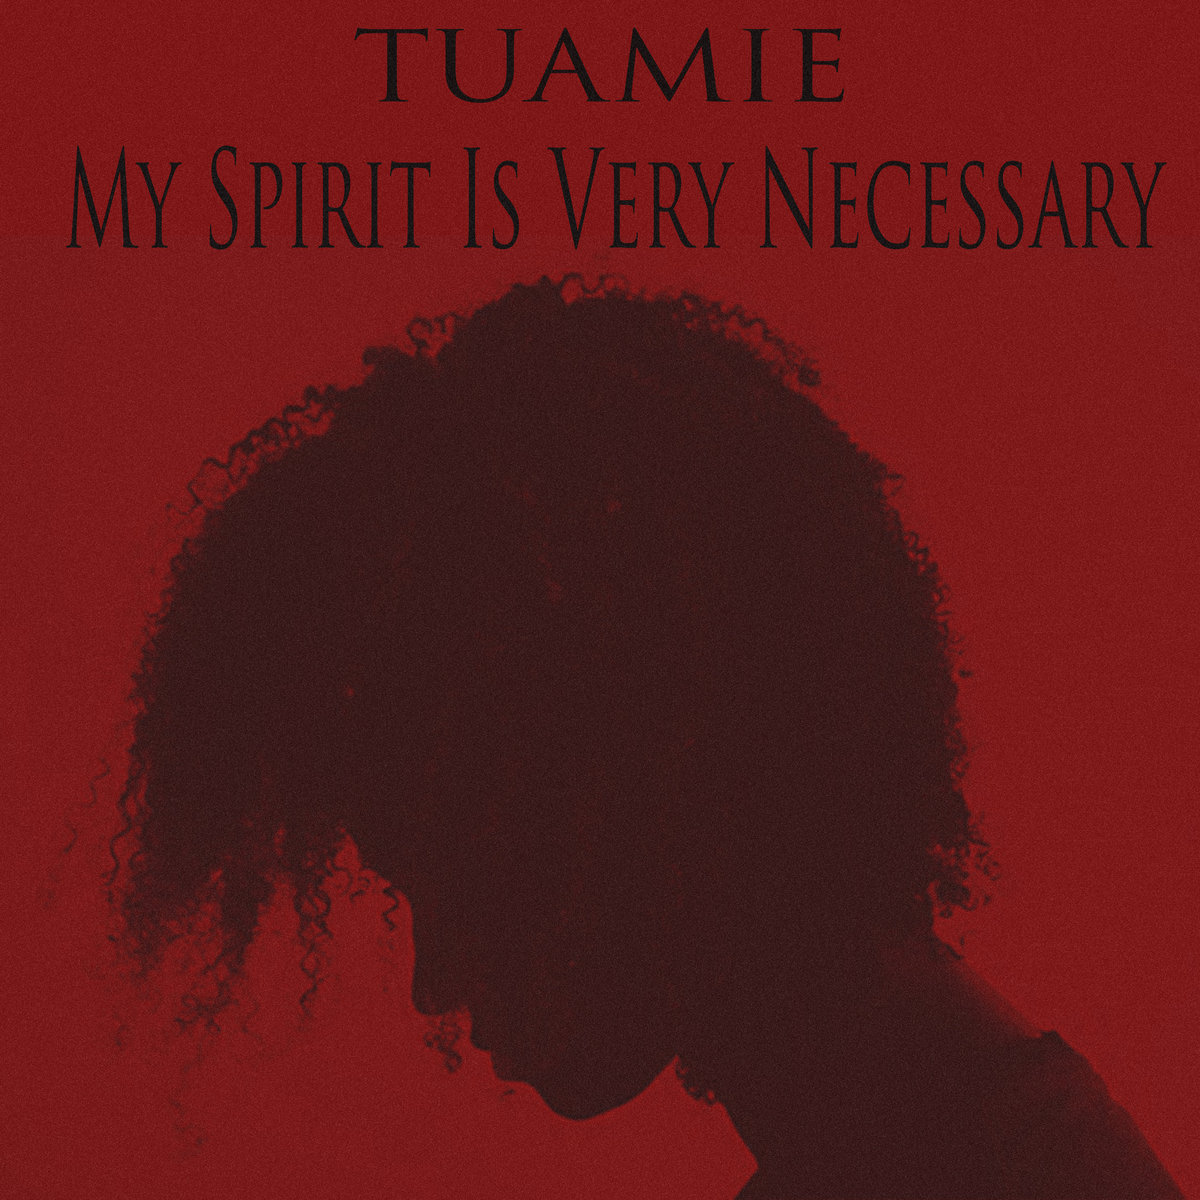 Tuamie - "My Spirit Is Very Necessary" (Release)